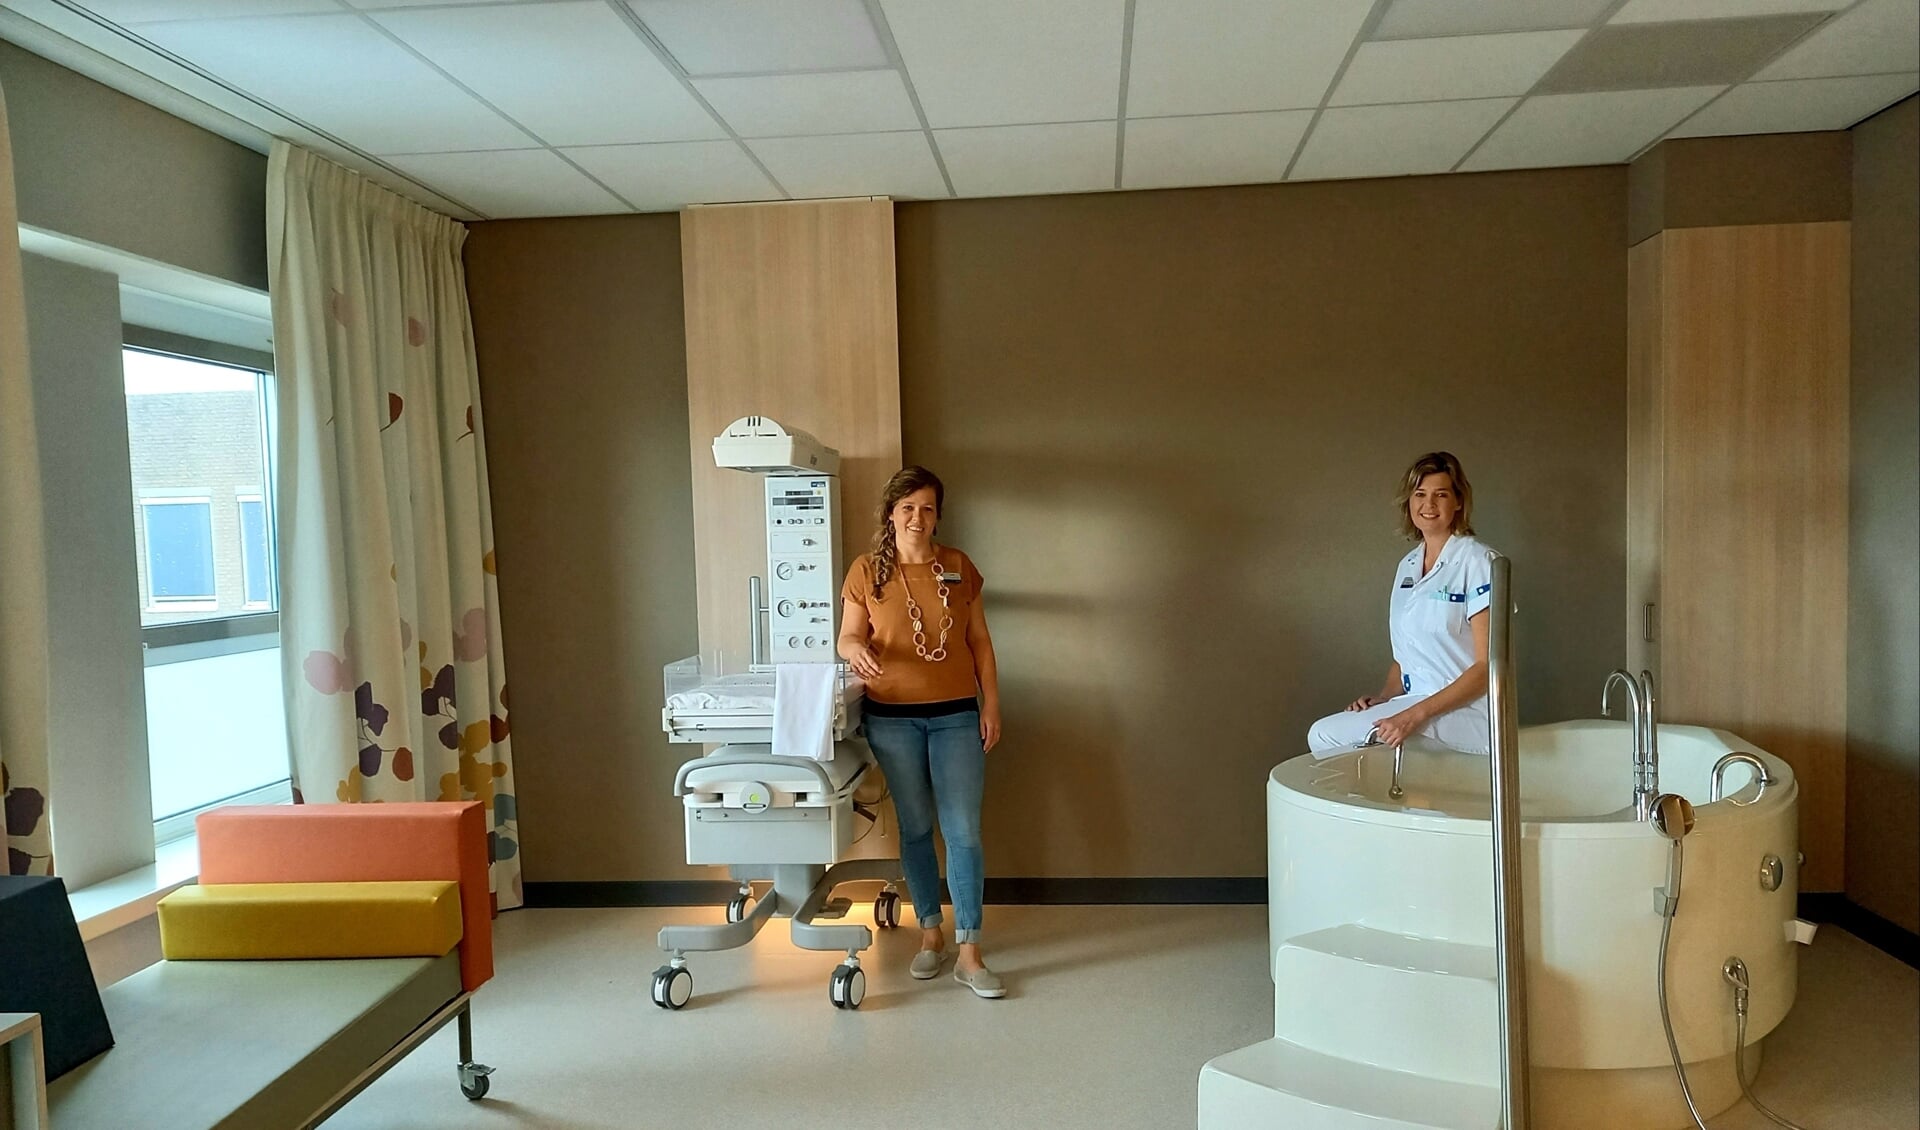 Regieverpleegkundige Judith van der Linden en kraamverzorgster Irma Boele zijn trots op het nieuwe Beatrix geboorte- en kindcentrum. 